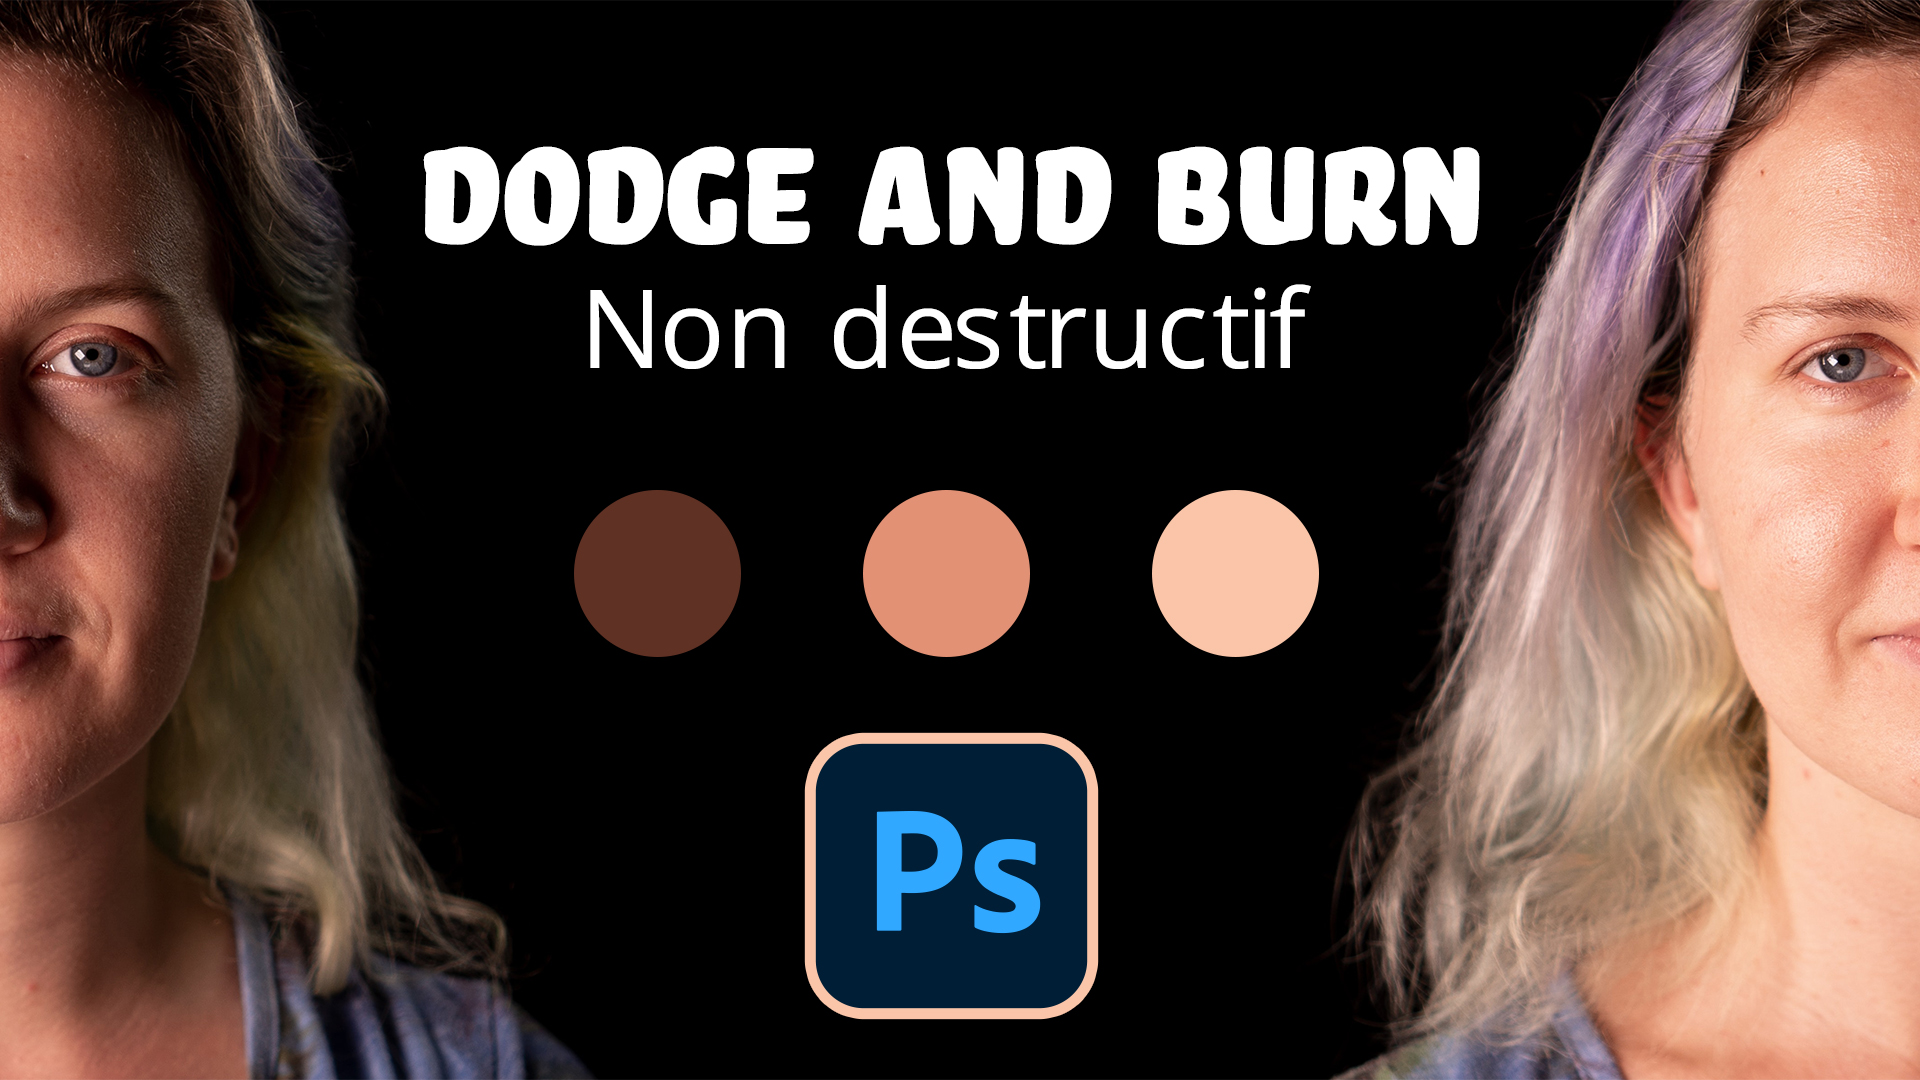 Dodge and burn méthode non destructive